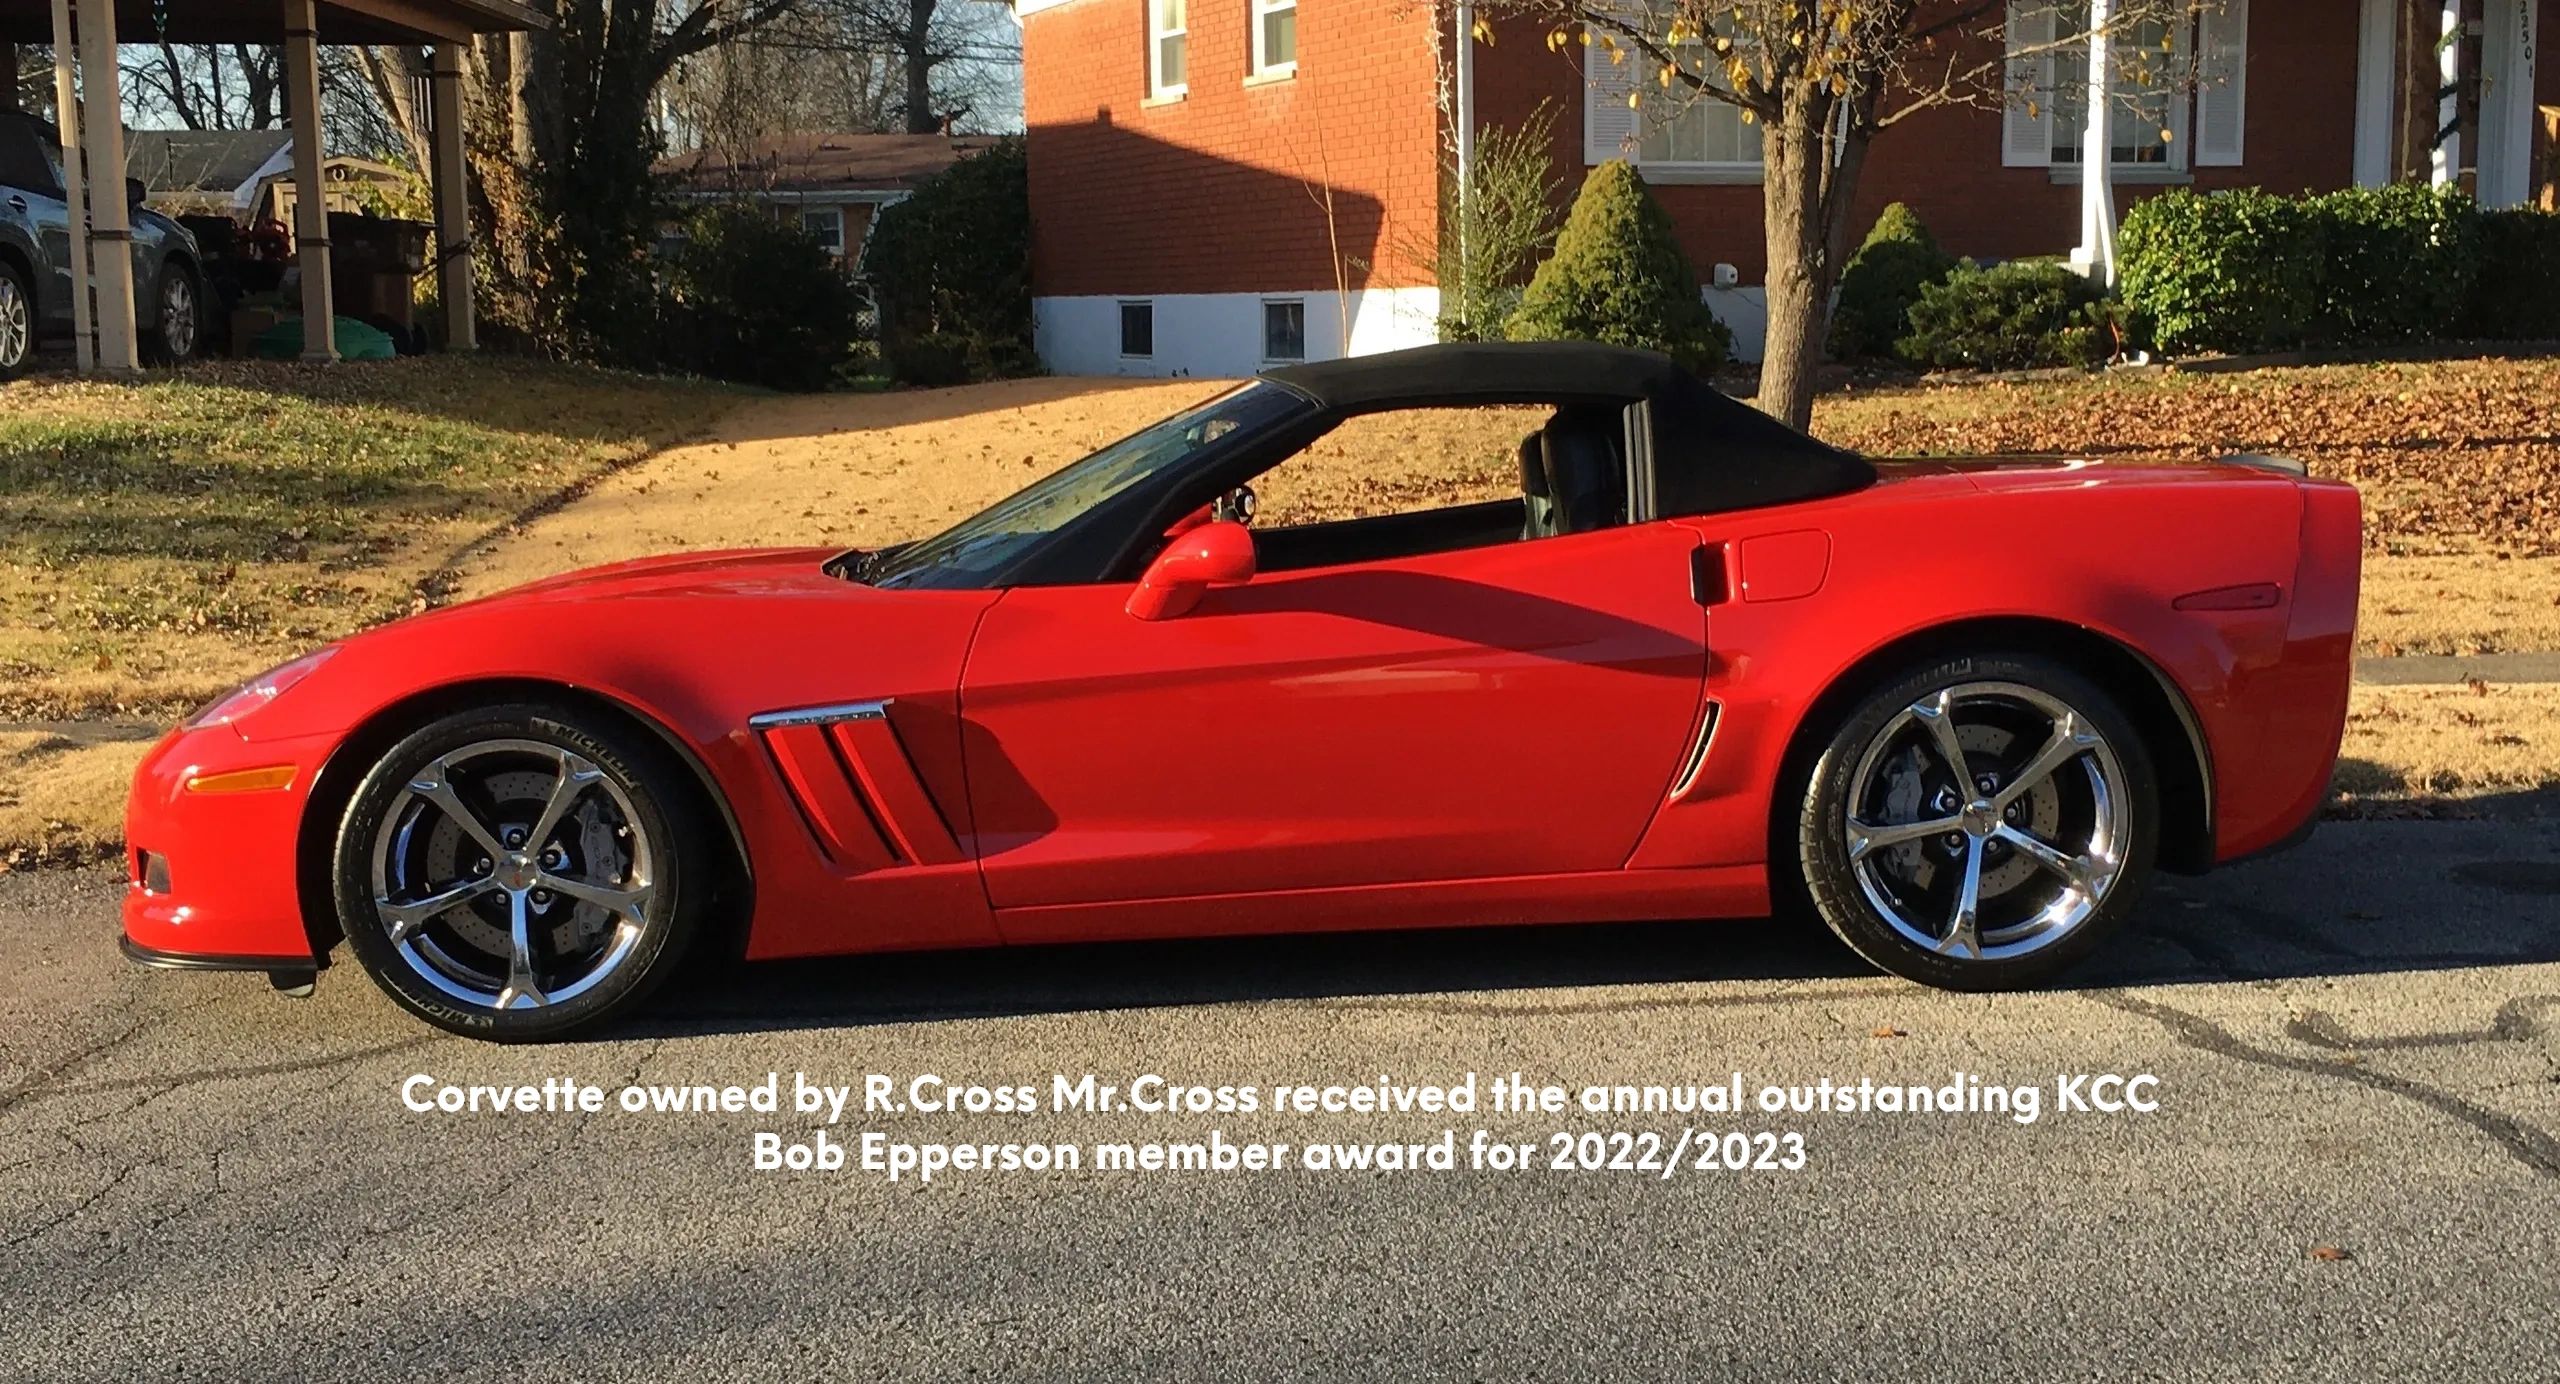 R. Cross, KCC Oustanding award-winning member-owner of this Corvette car for 2023